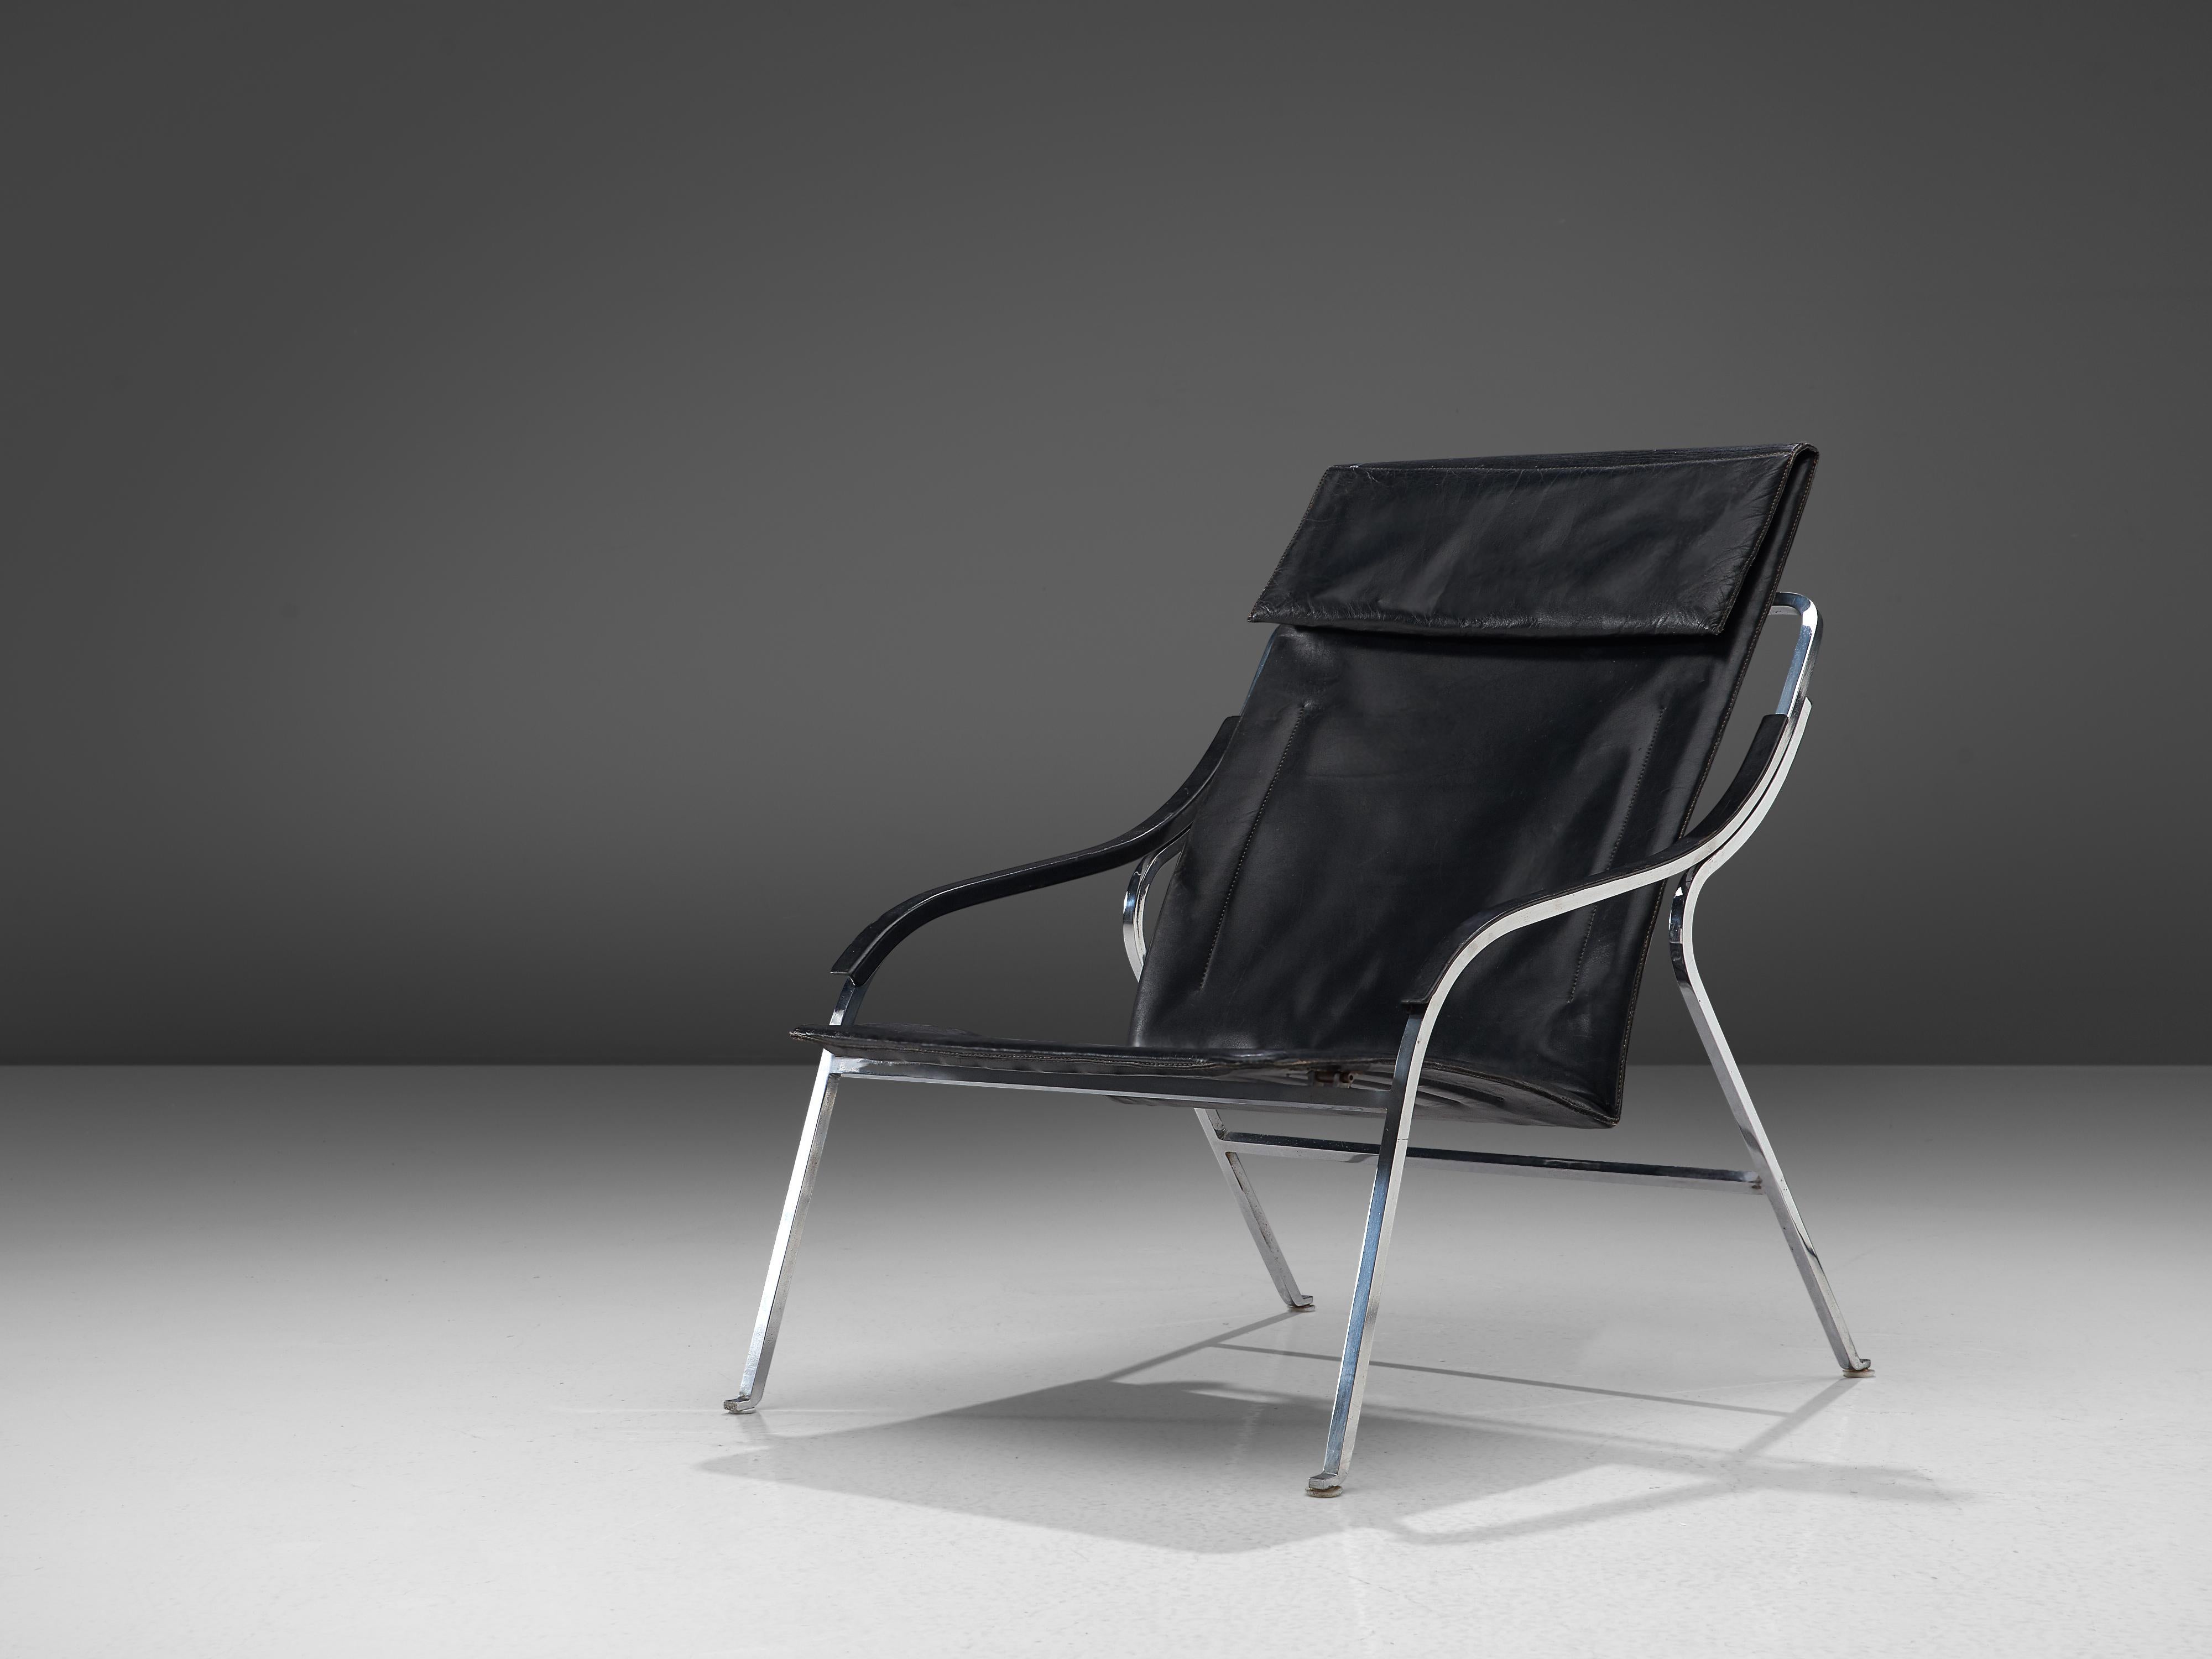 Marco Zanuso pour Arflex, chaise longue, cuir noir, acier, Italie, 1964

Cette chaise longue de Zanuso reste parmi les meilleurs exemples de fauteuils conçus par l'architecte. Ce n'est pas seulement son ingénieux design élancé qui la distingue, mais